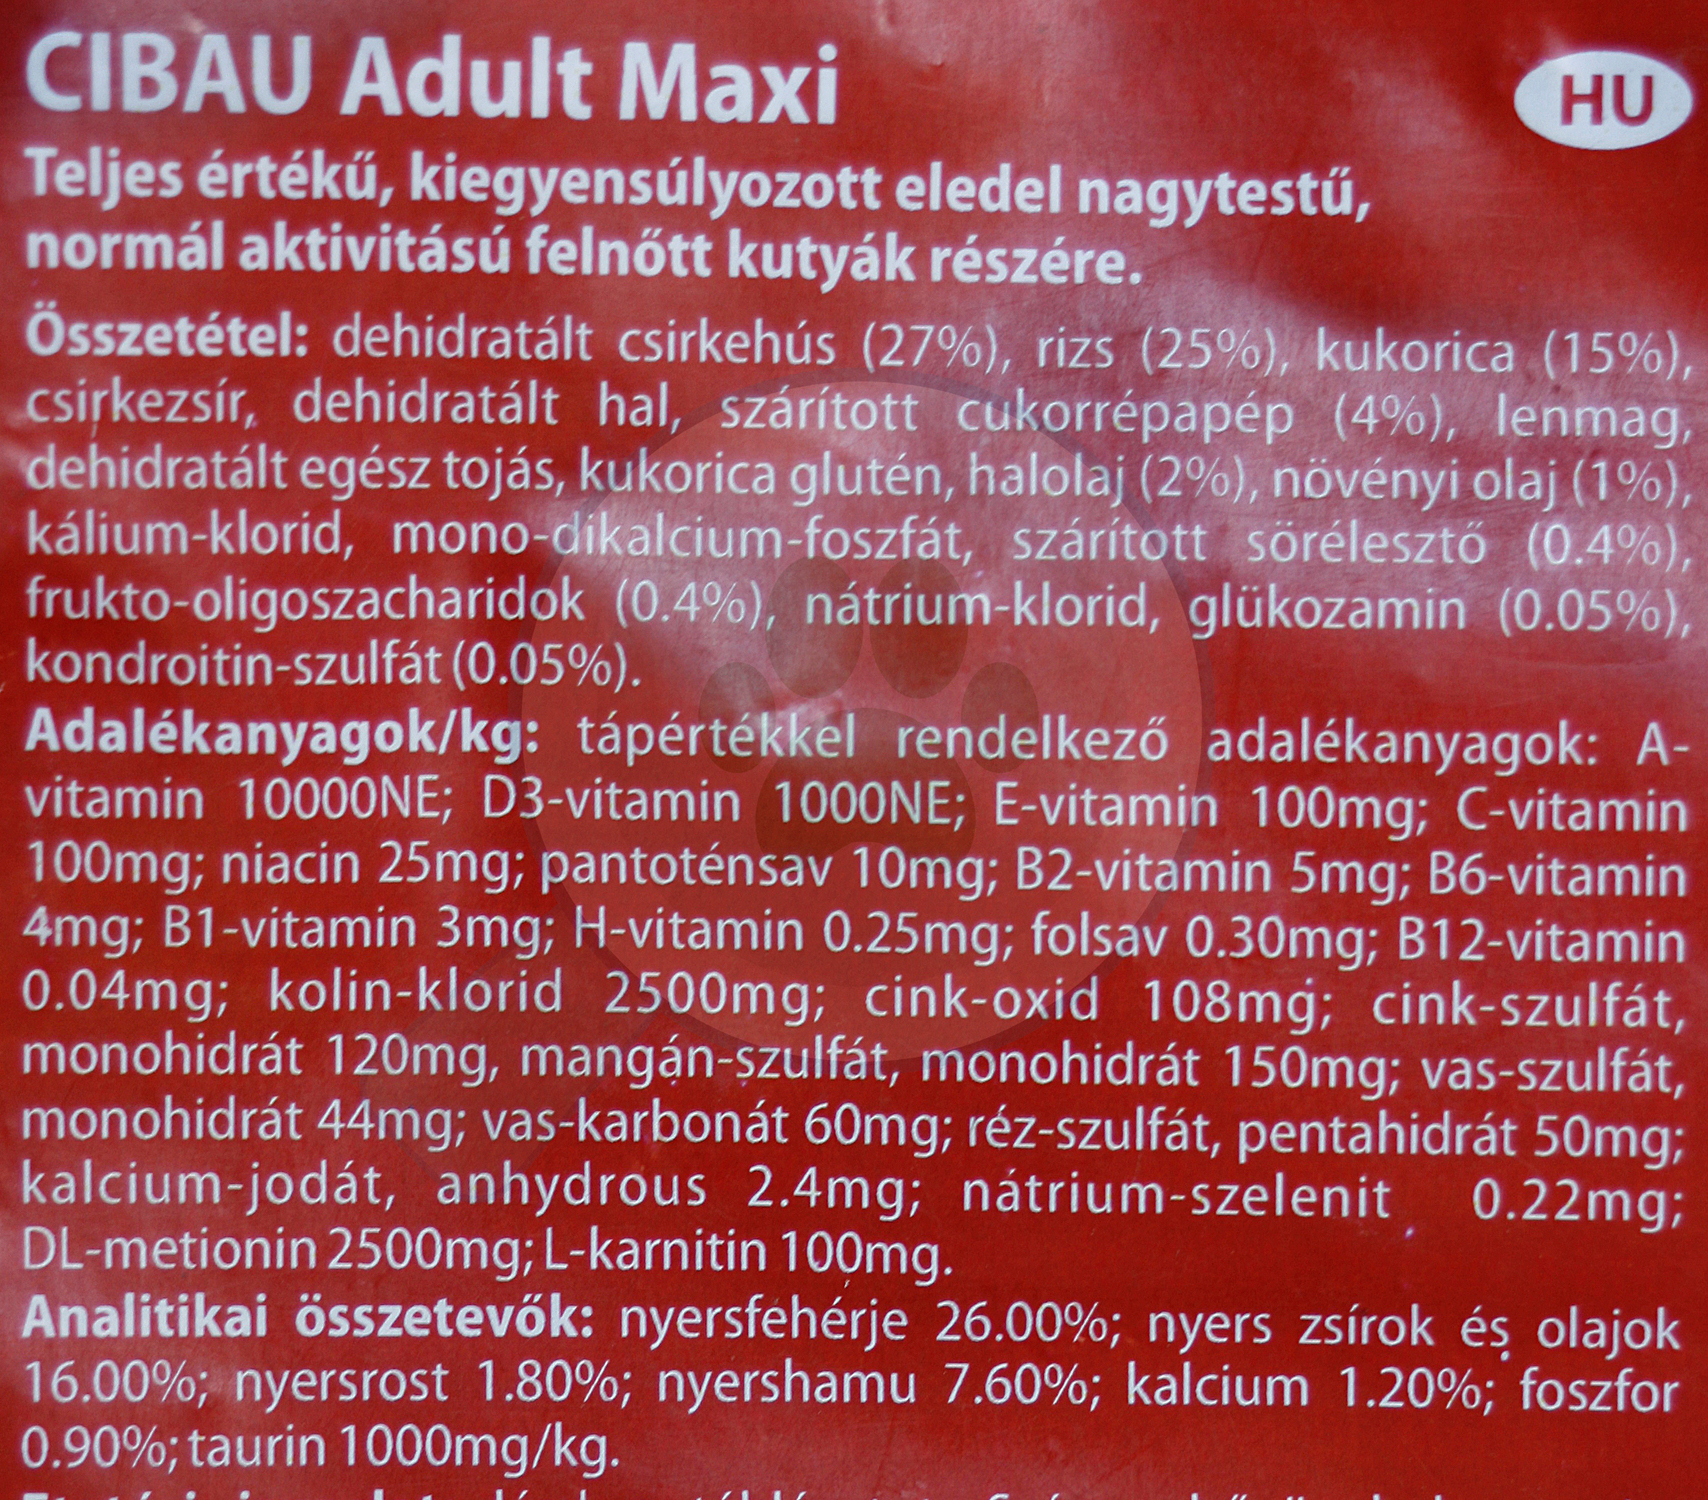 Cibau Adult Maxi